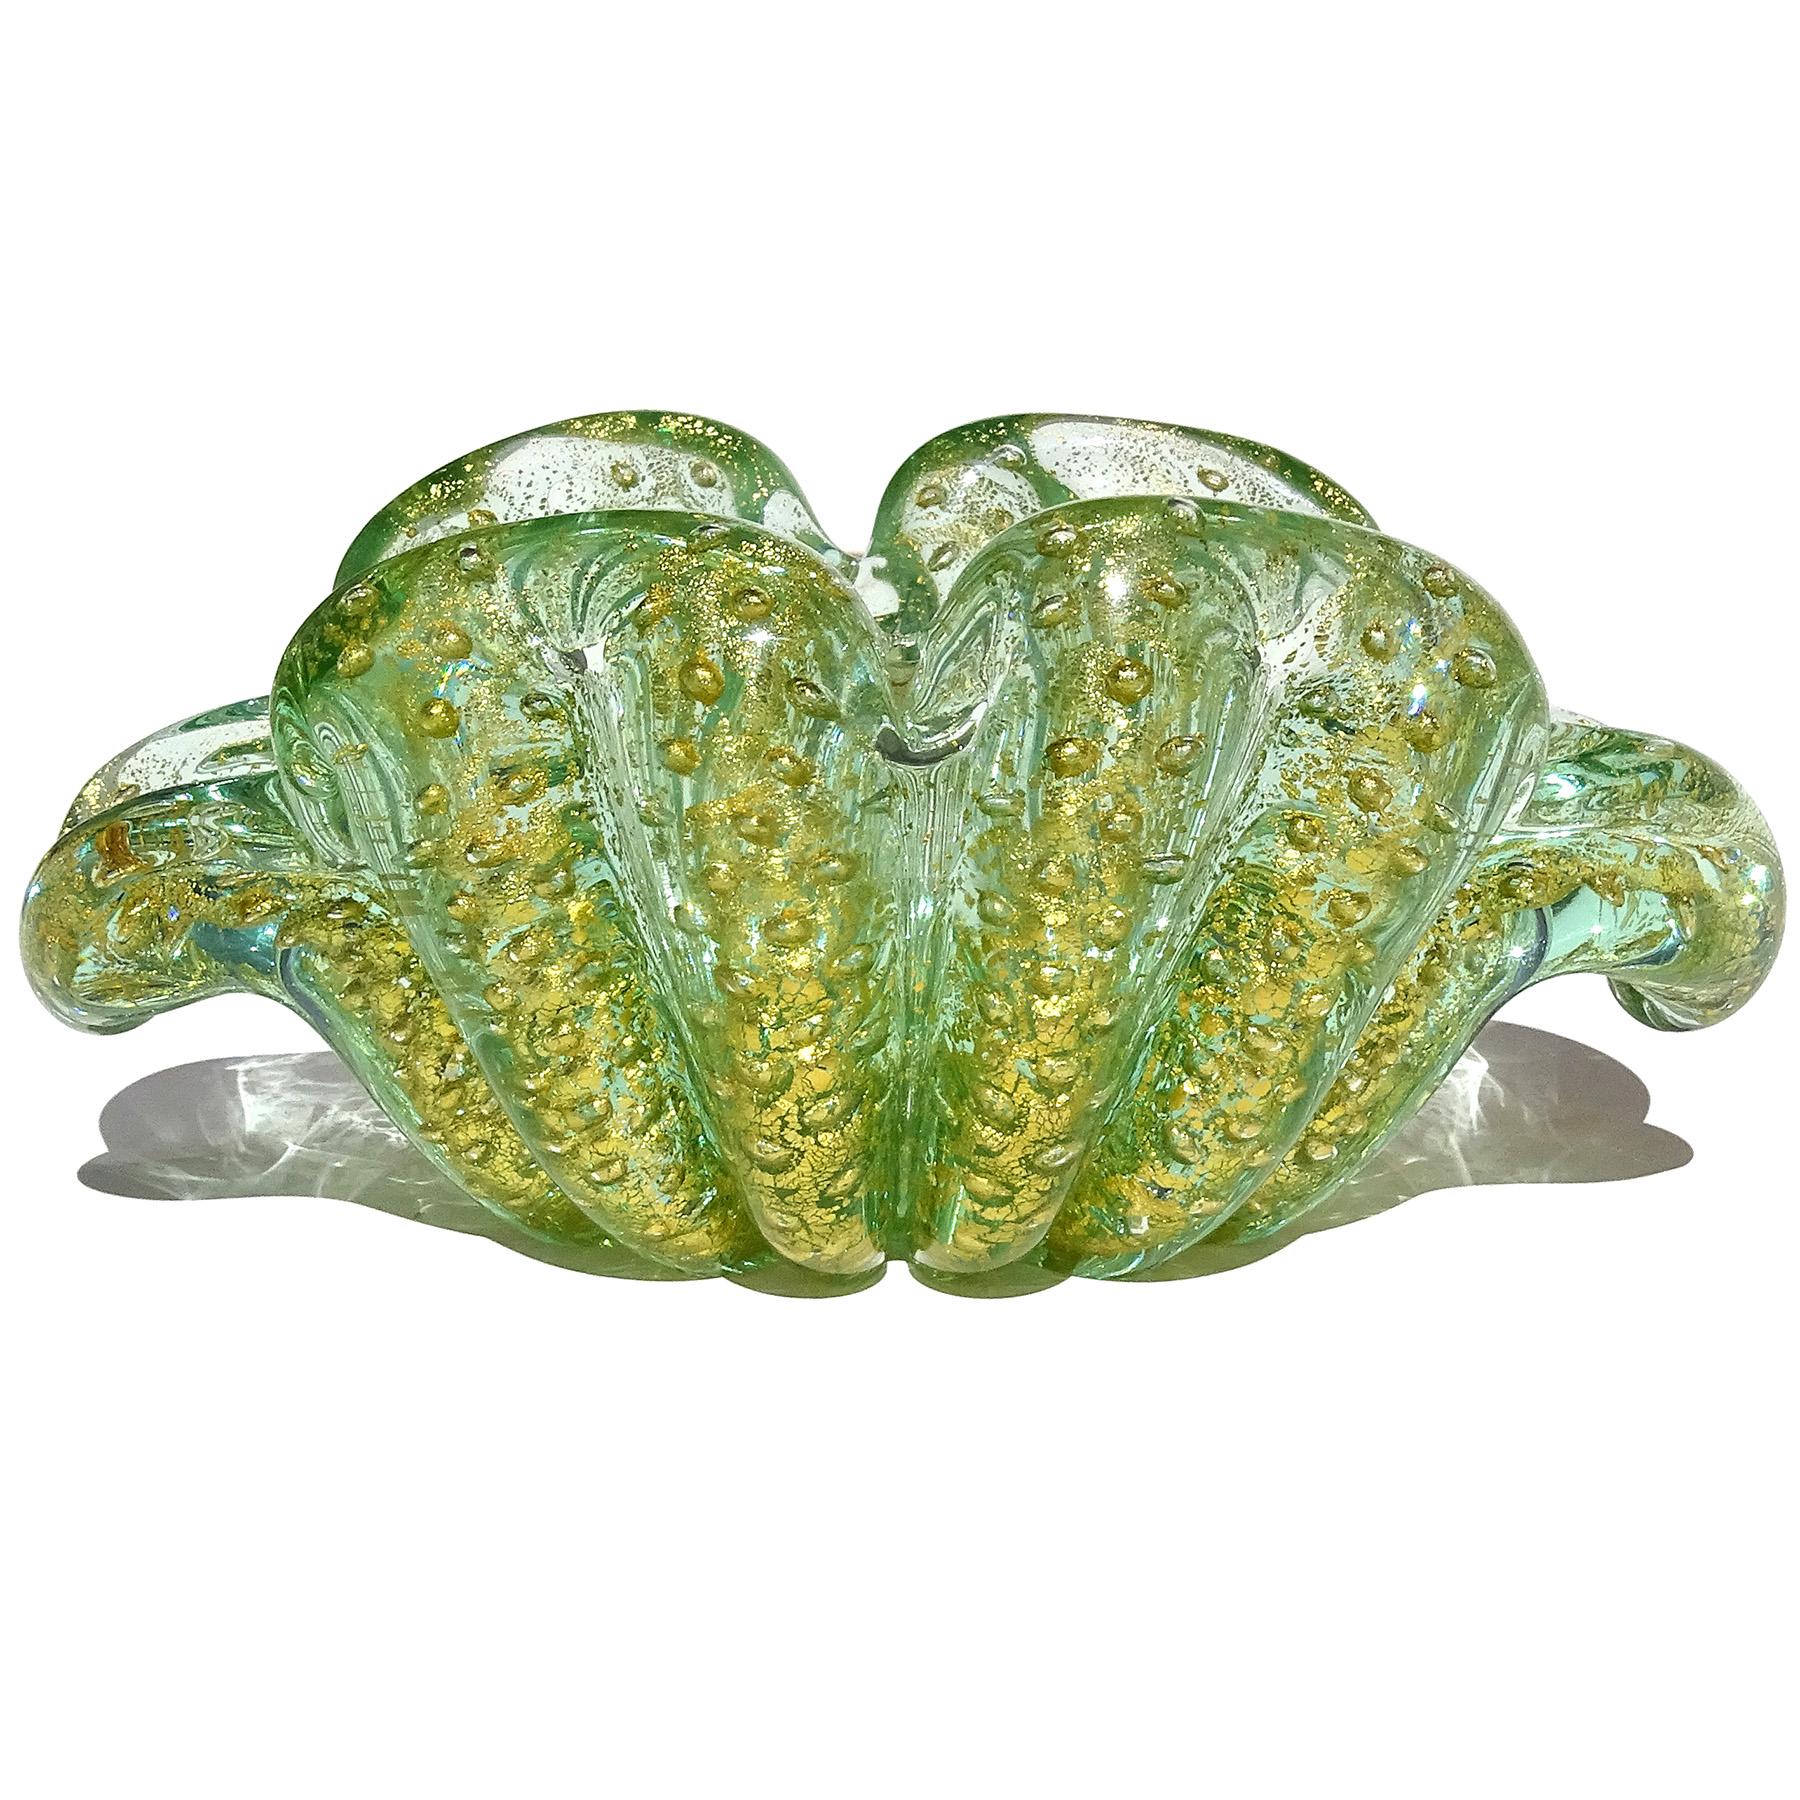 Magnifique bol en forme de fleur en verre d'art italien de Murano soufflé à la main, vert, bulles et mouchetures d'or. Document remis au designer Ercole Barovier pour la société Barovier e Toso. La couleur est un vert transparent, avec une technique